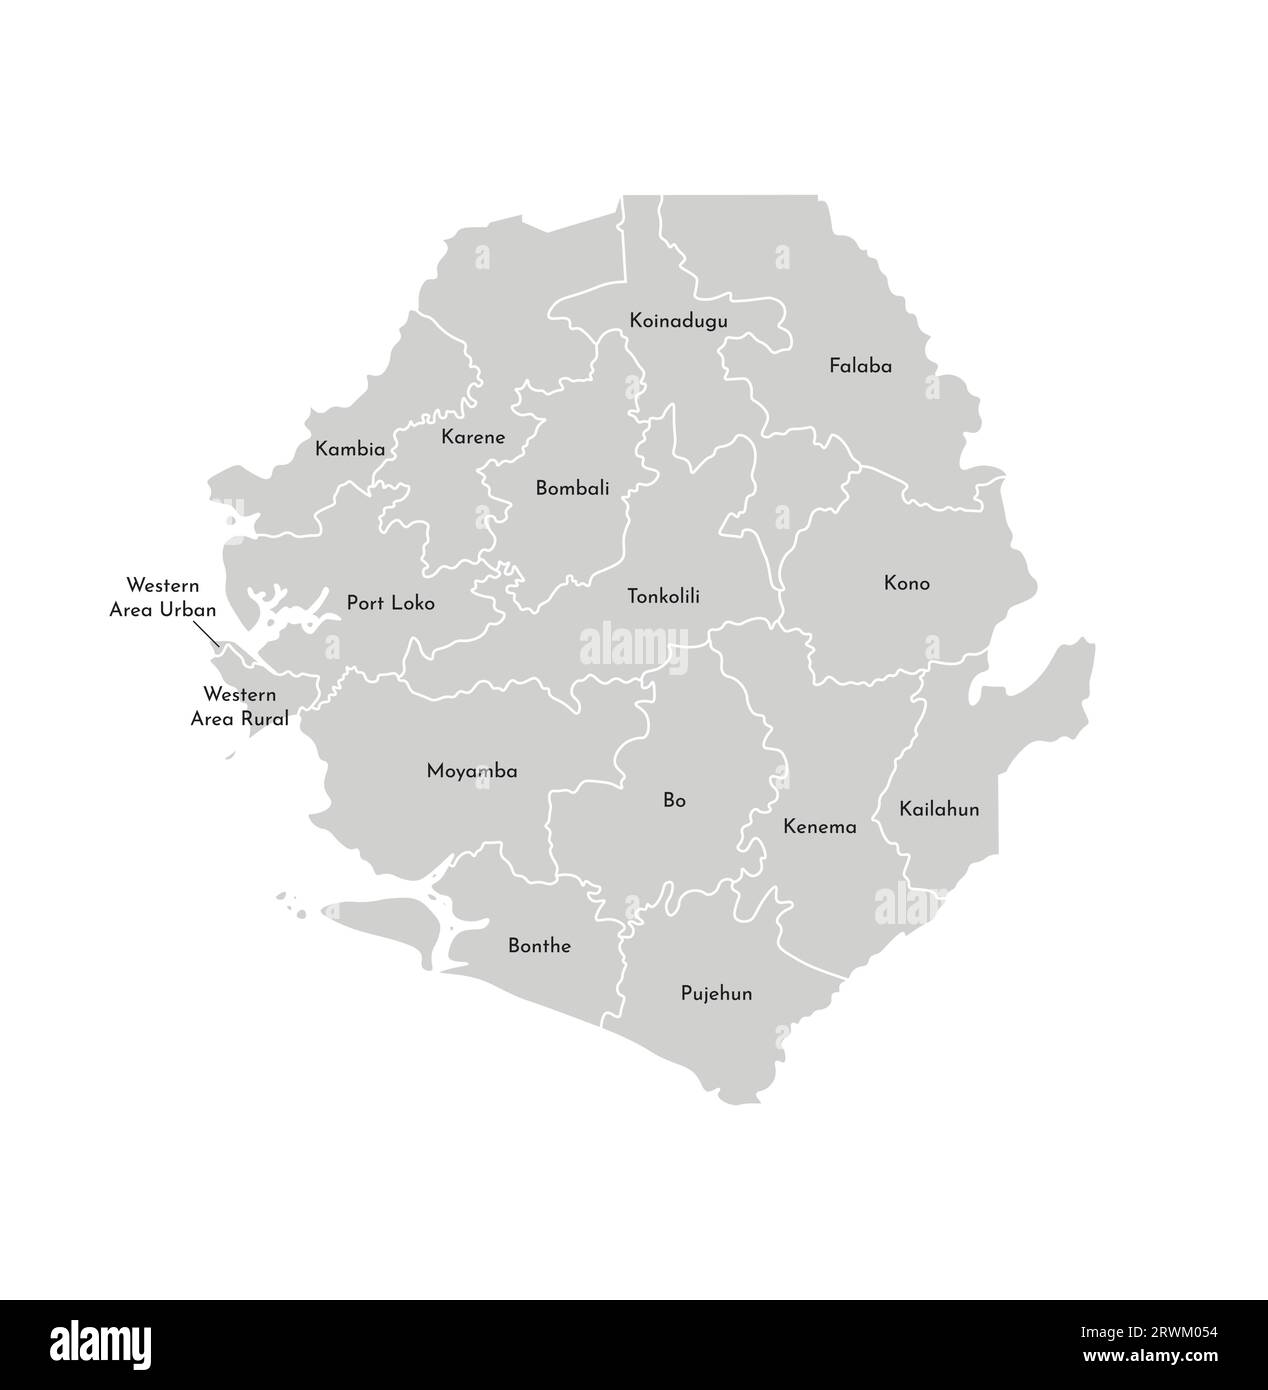 Vektorisolierte Darstellung der vereinfachten Verwaltungskarte Sierra Leones. Grenzen und Namen der Bezirke (Regionen). Graue Silhouetten. Weiß o Stock Vektor